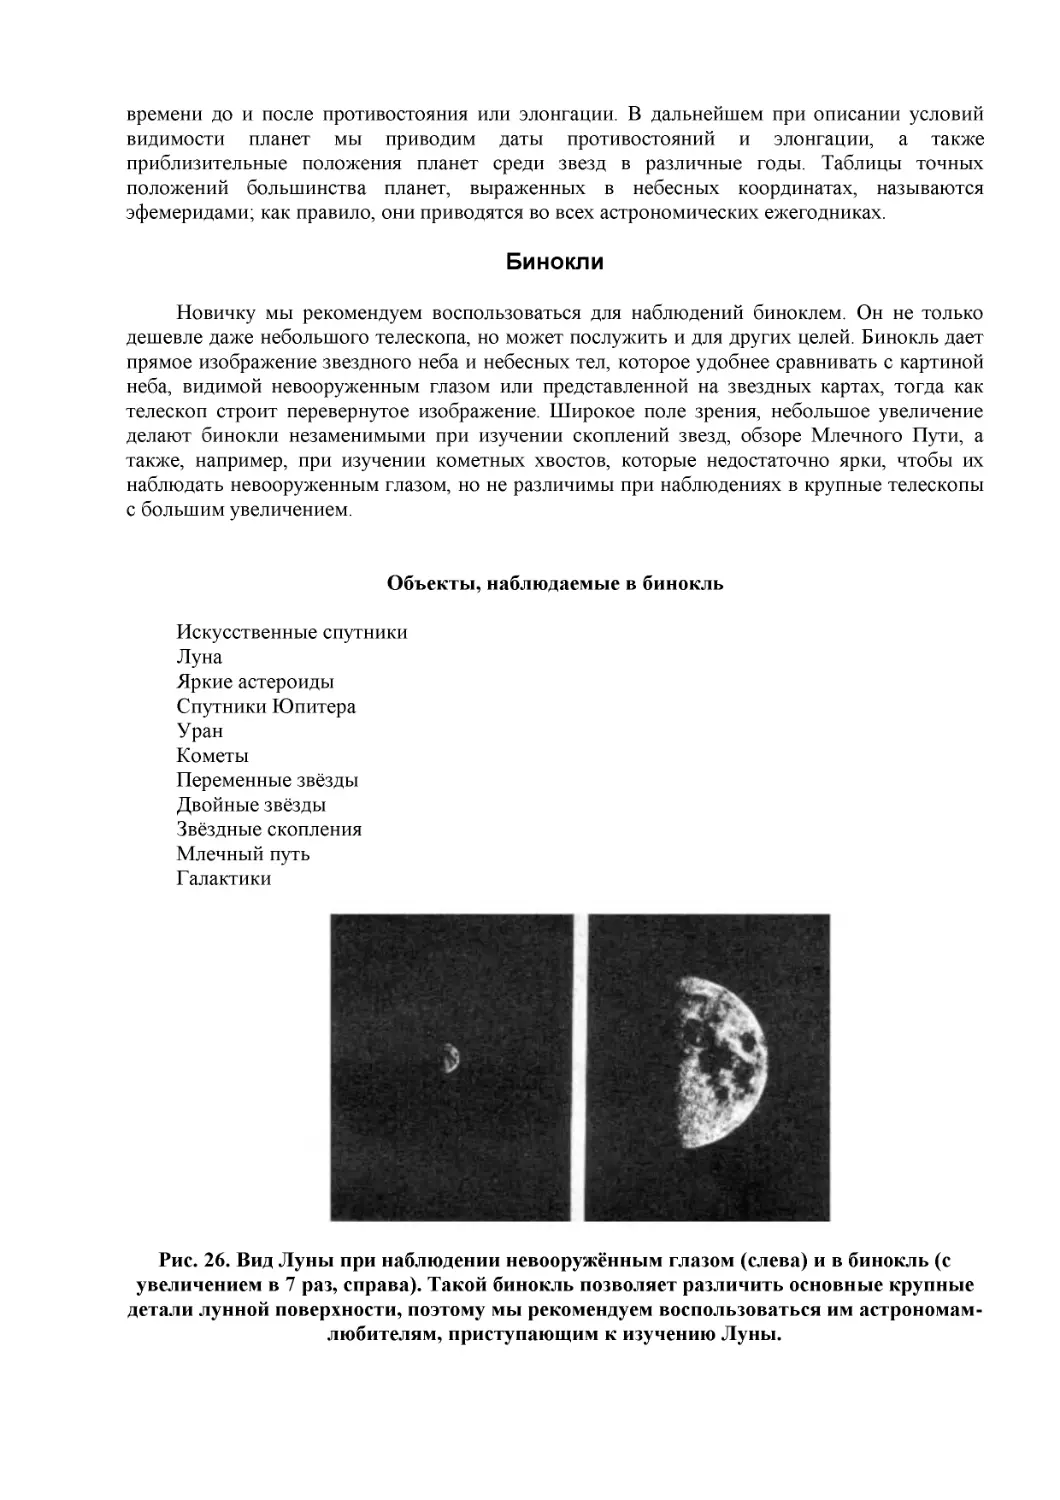 Бинокли
Объекты, наблюдаемые в бинокль
Рис. 26. Вид Луны при наблюдении невооружённым глазом (слева) и в бинокль (с увеличением в 7 раз, справа). Такой бинокль позволяет различить основные крупные детали лунной поверхности, поэтому мы рекомендуем воспользоваться им астрономам-любителям, пр...